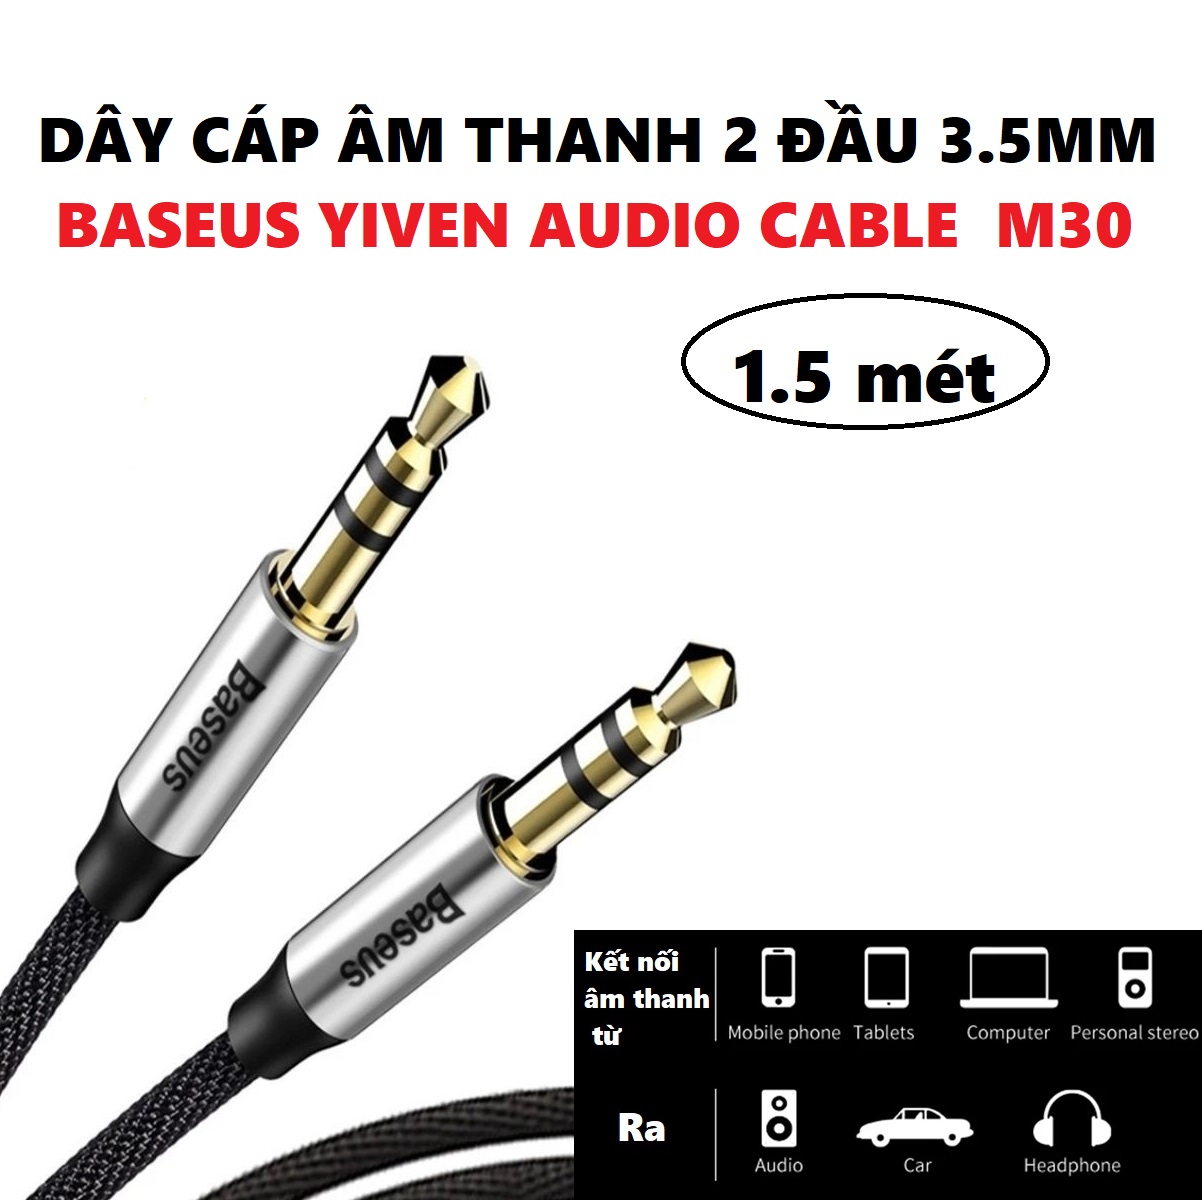 Dây cáp âm thanh 2 đầu 3.5mm Baseus Yiven Audio Cable M30 150cm  - Hàng chính hãng - Đen1,5 mét